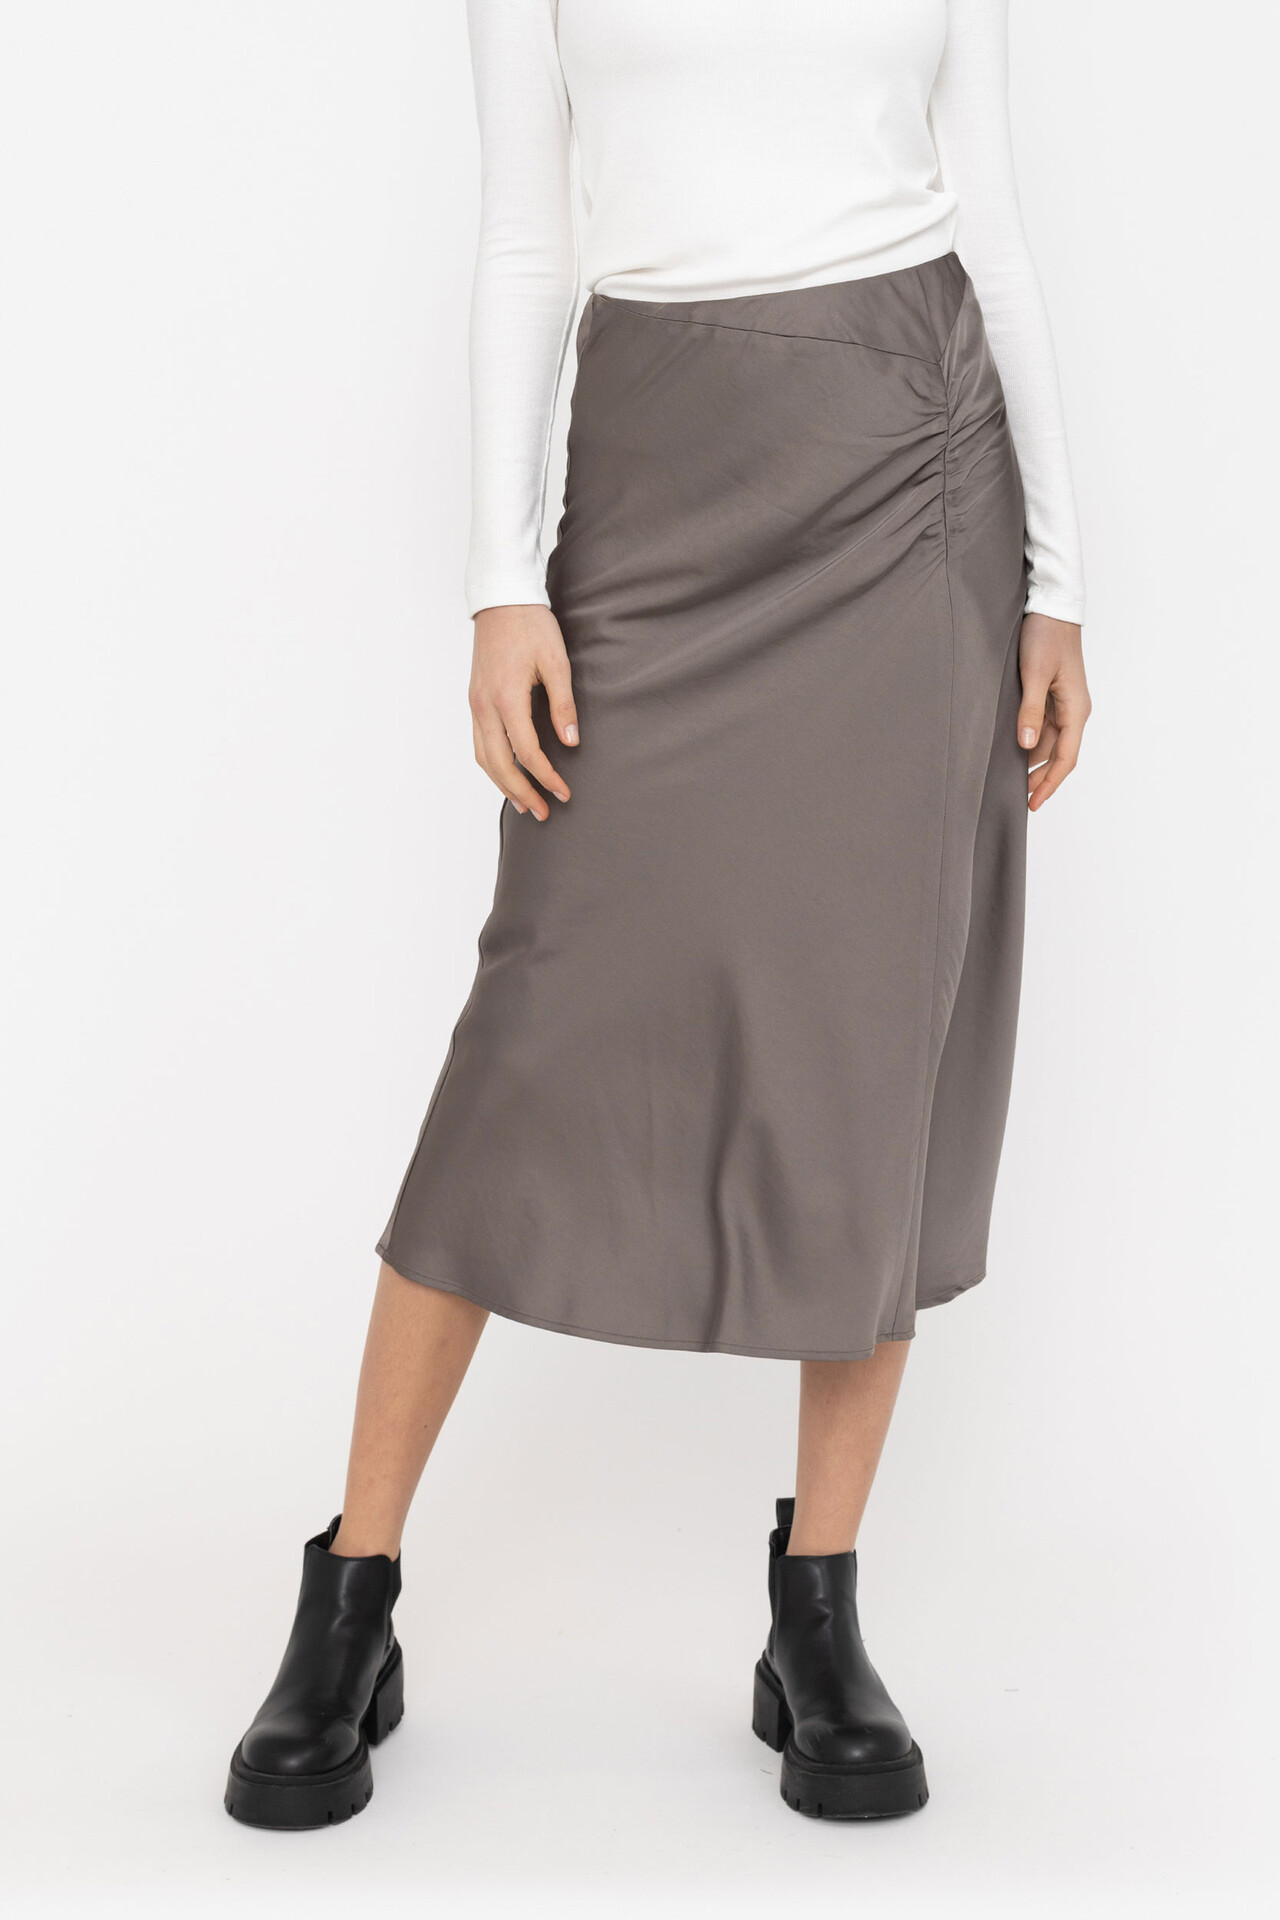 SOFT REBELS SRLucille Midi Skirt (BRUN L)